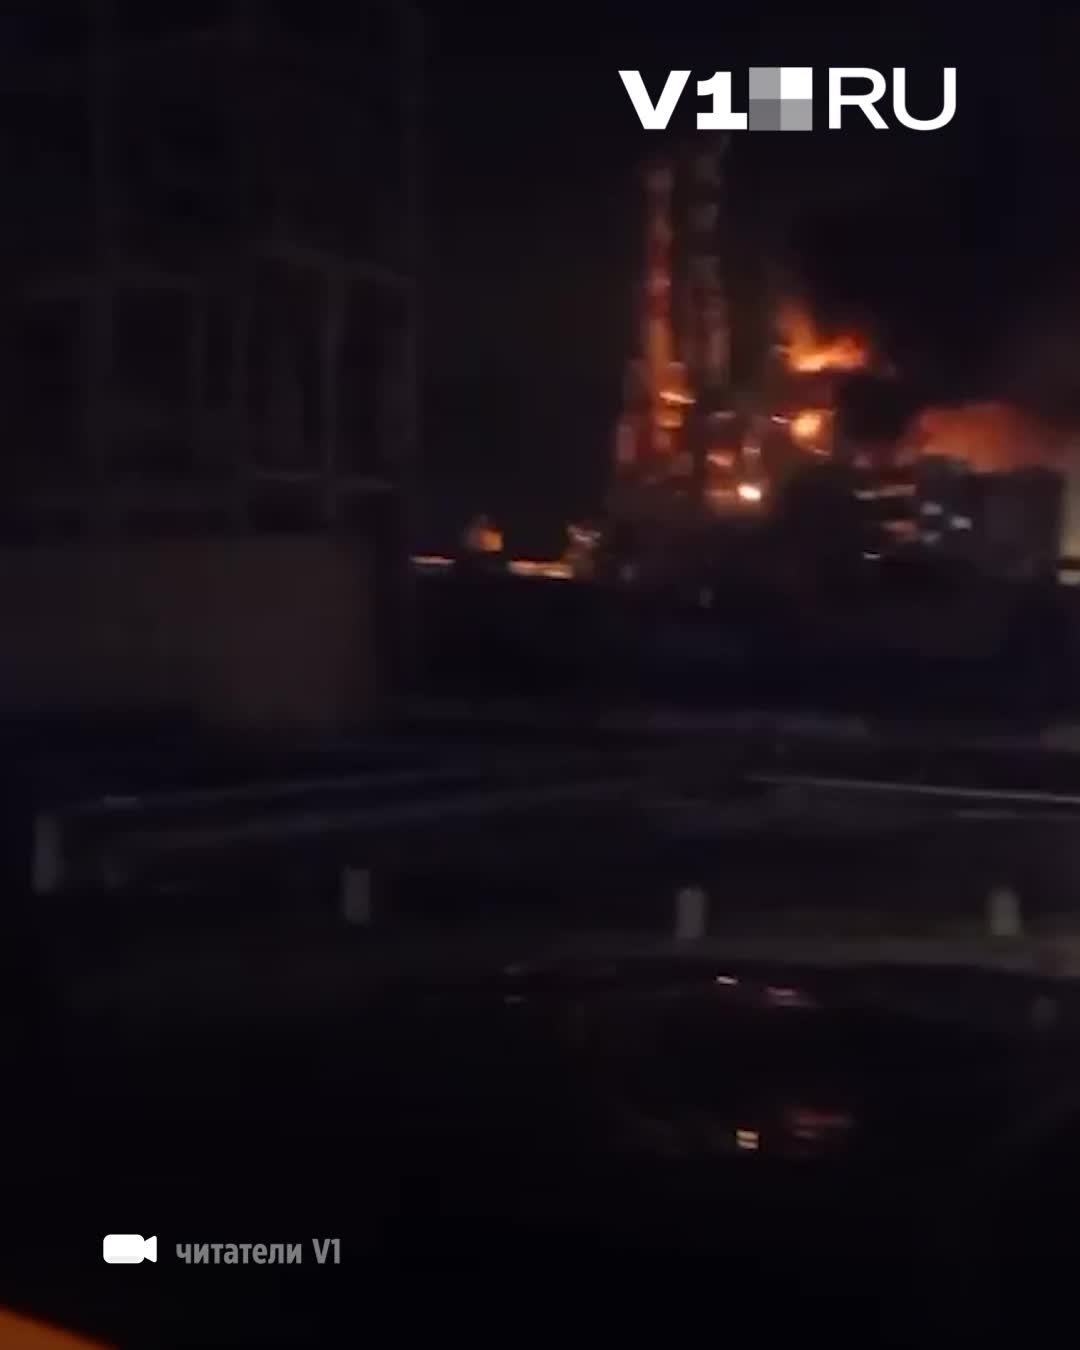 Een van de belangrijkste eenheden van de Volgograd-raffinaderij ELOU-AVT-5 stond naar verluidt in brand als gevolg van een drone-aanval